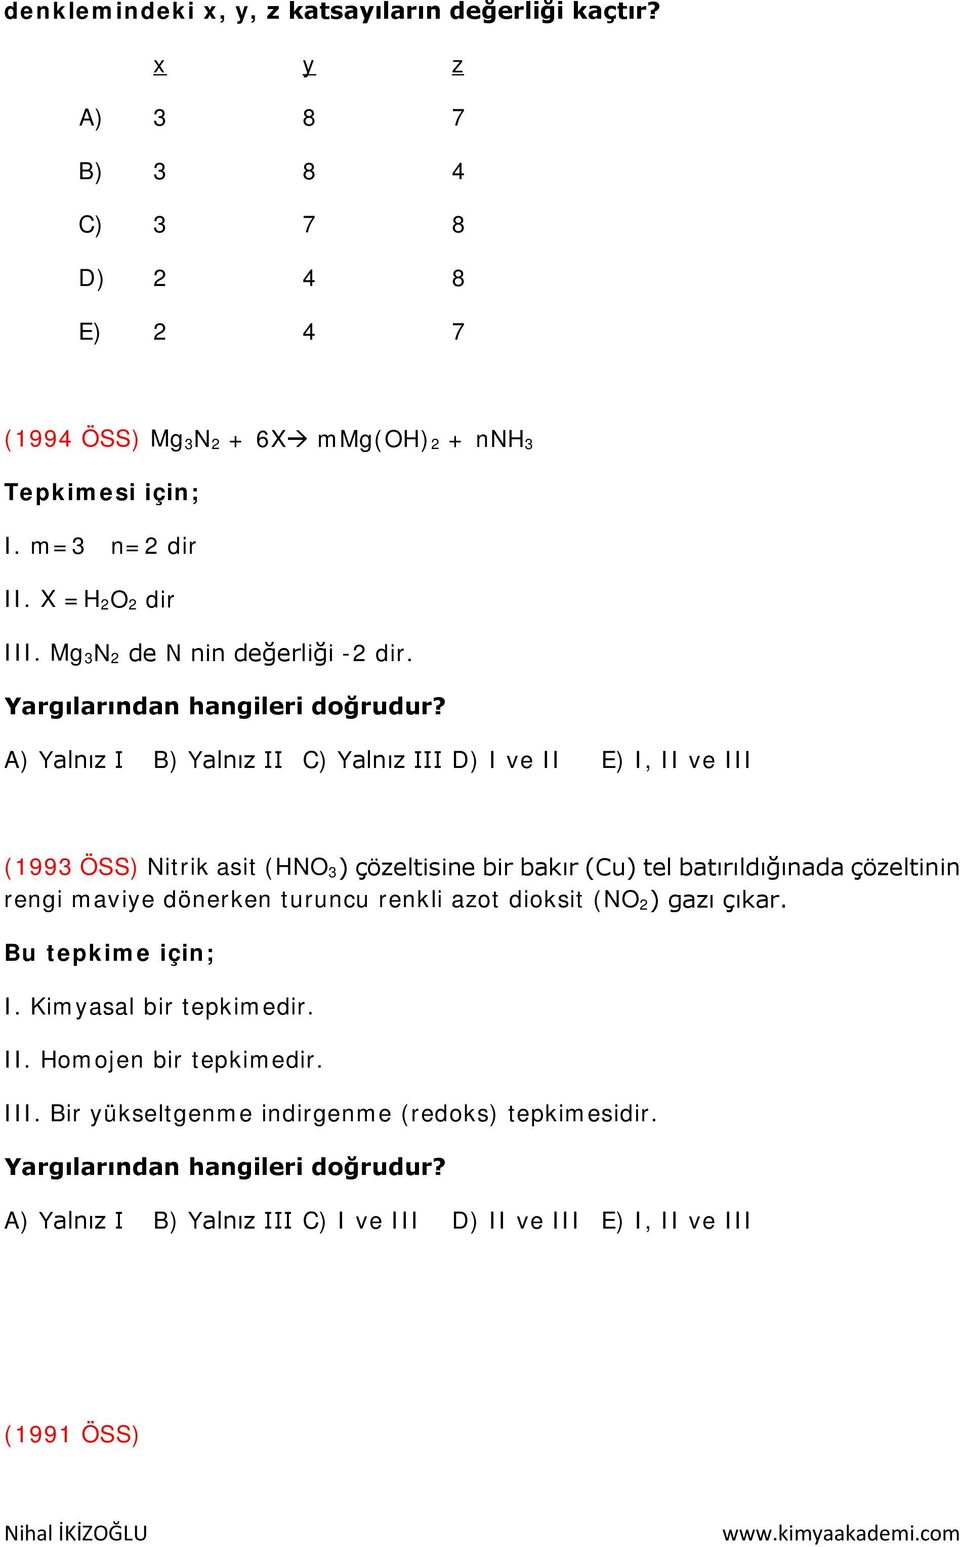 A) Yalnız I B) Yalnız II C) Yalnız III D) I ve II E) I, II ve III (1993 ÖSS) Nitrik asit (HNO 3) çözeltisine bir bakır (Cu) tel batırıldığınada çözeltinin rengi maviye dönerken